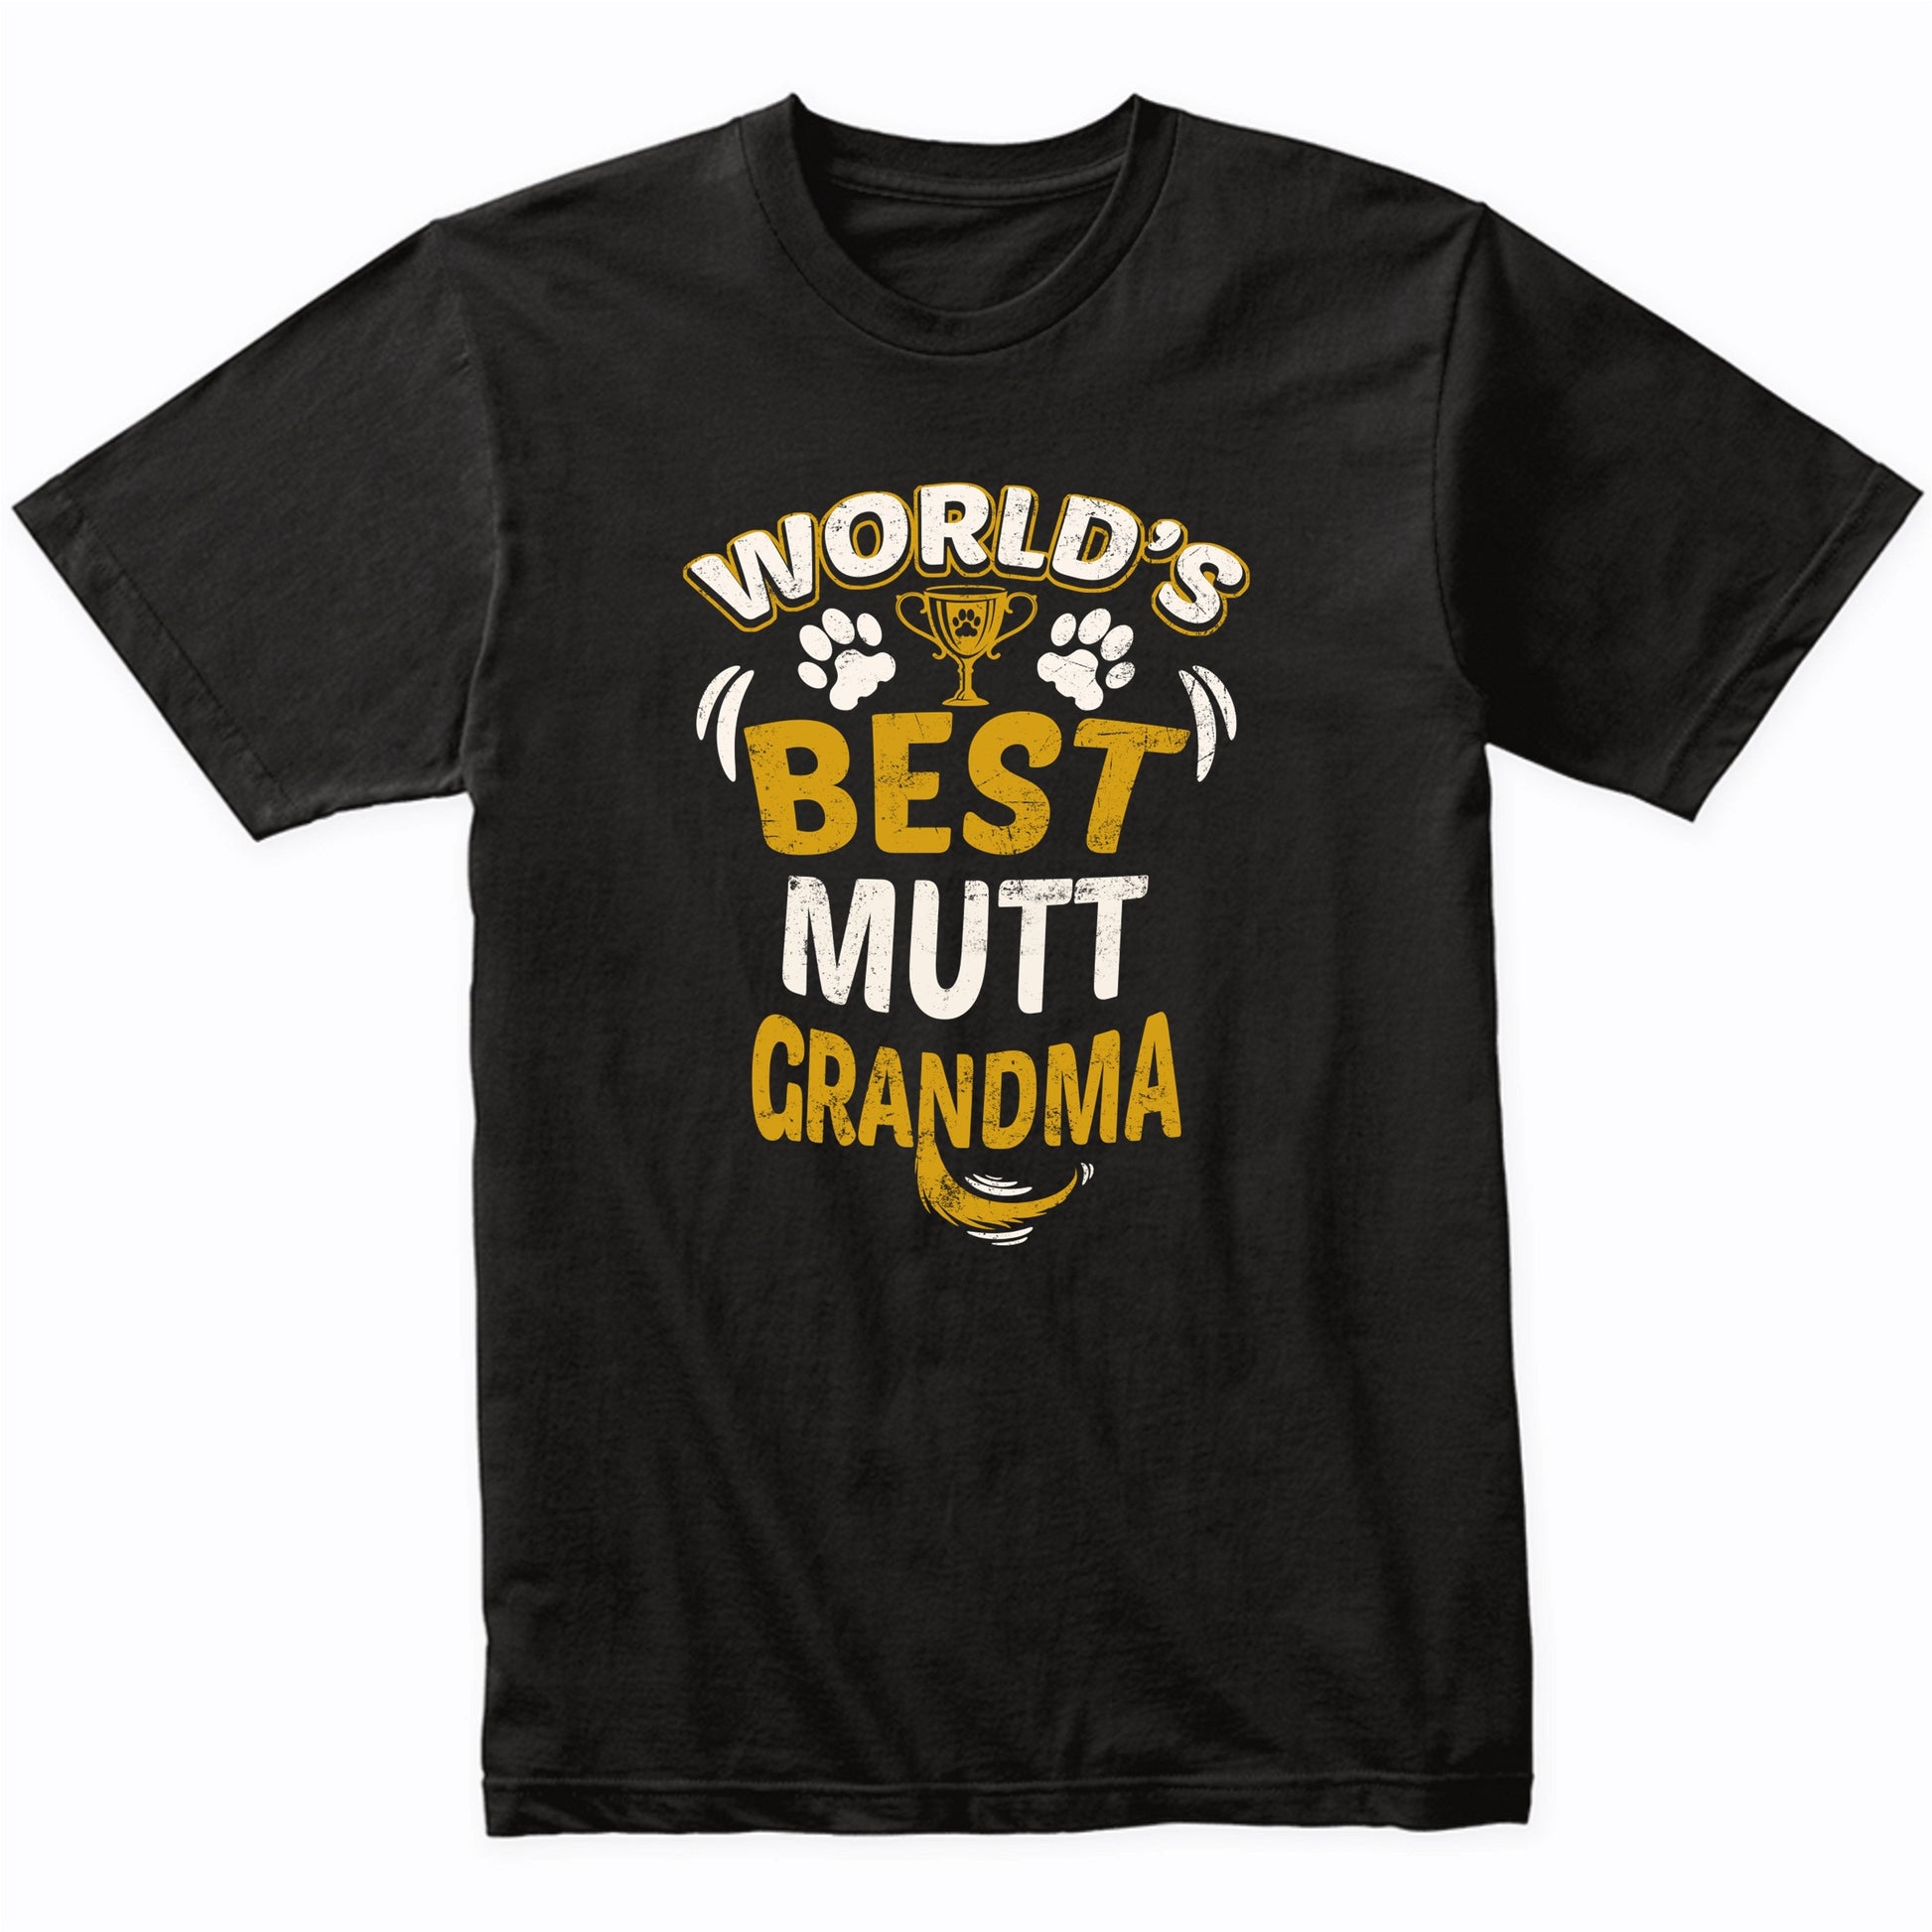 World's Best Mutt Grandma Graphic T-Shirt